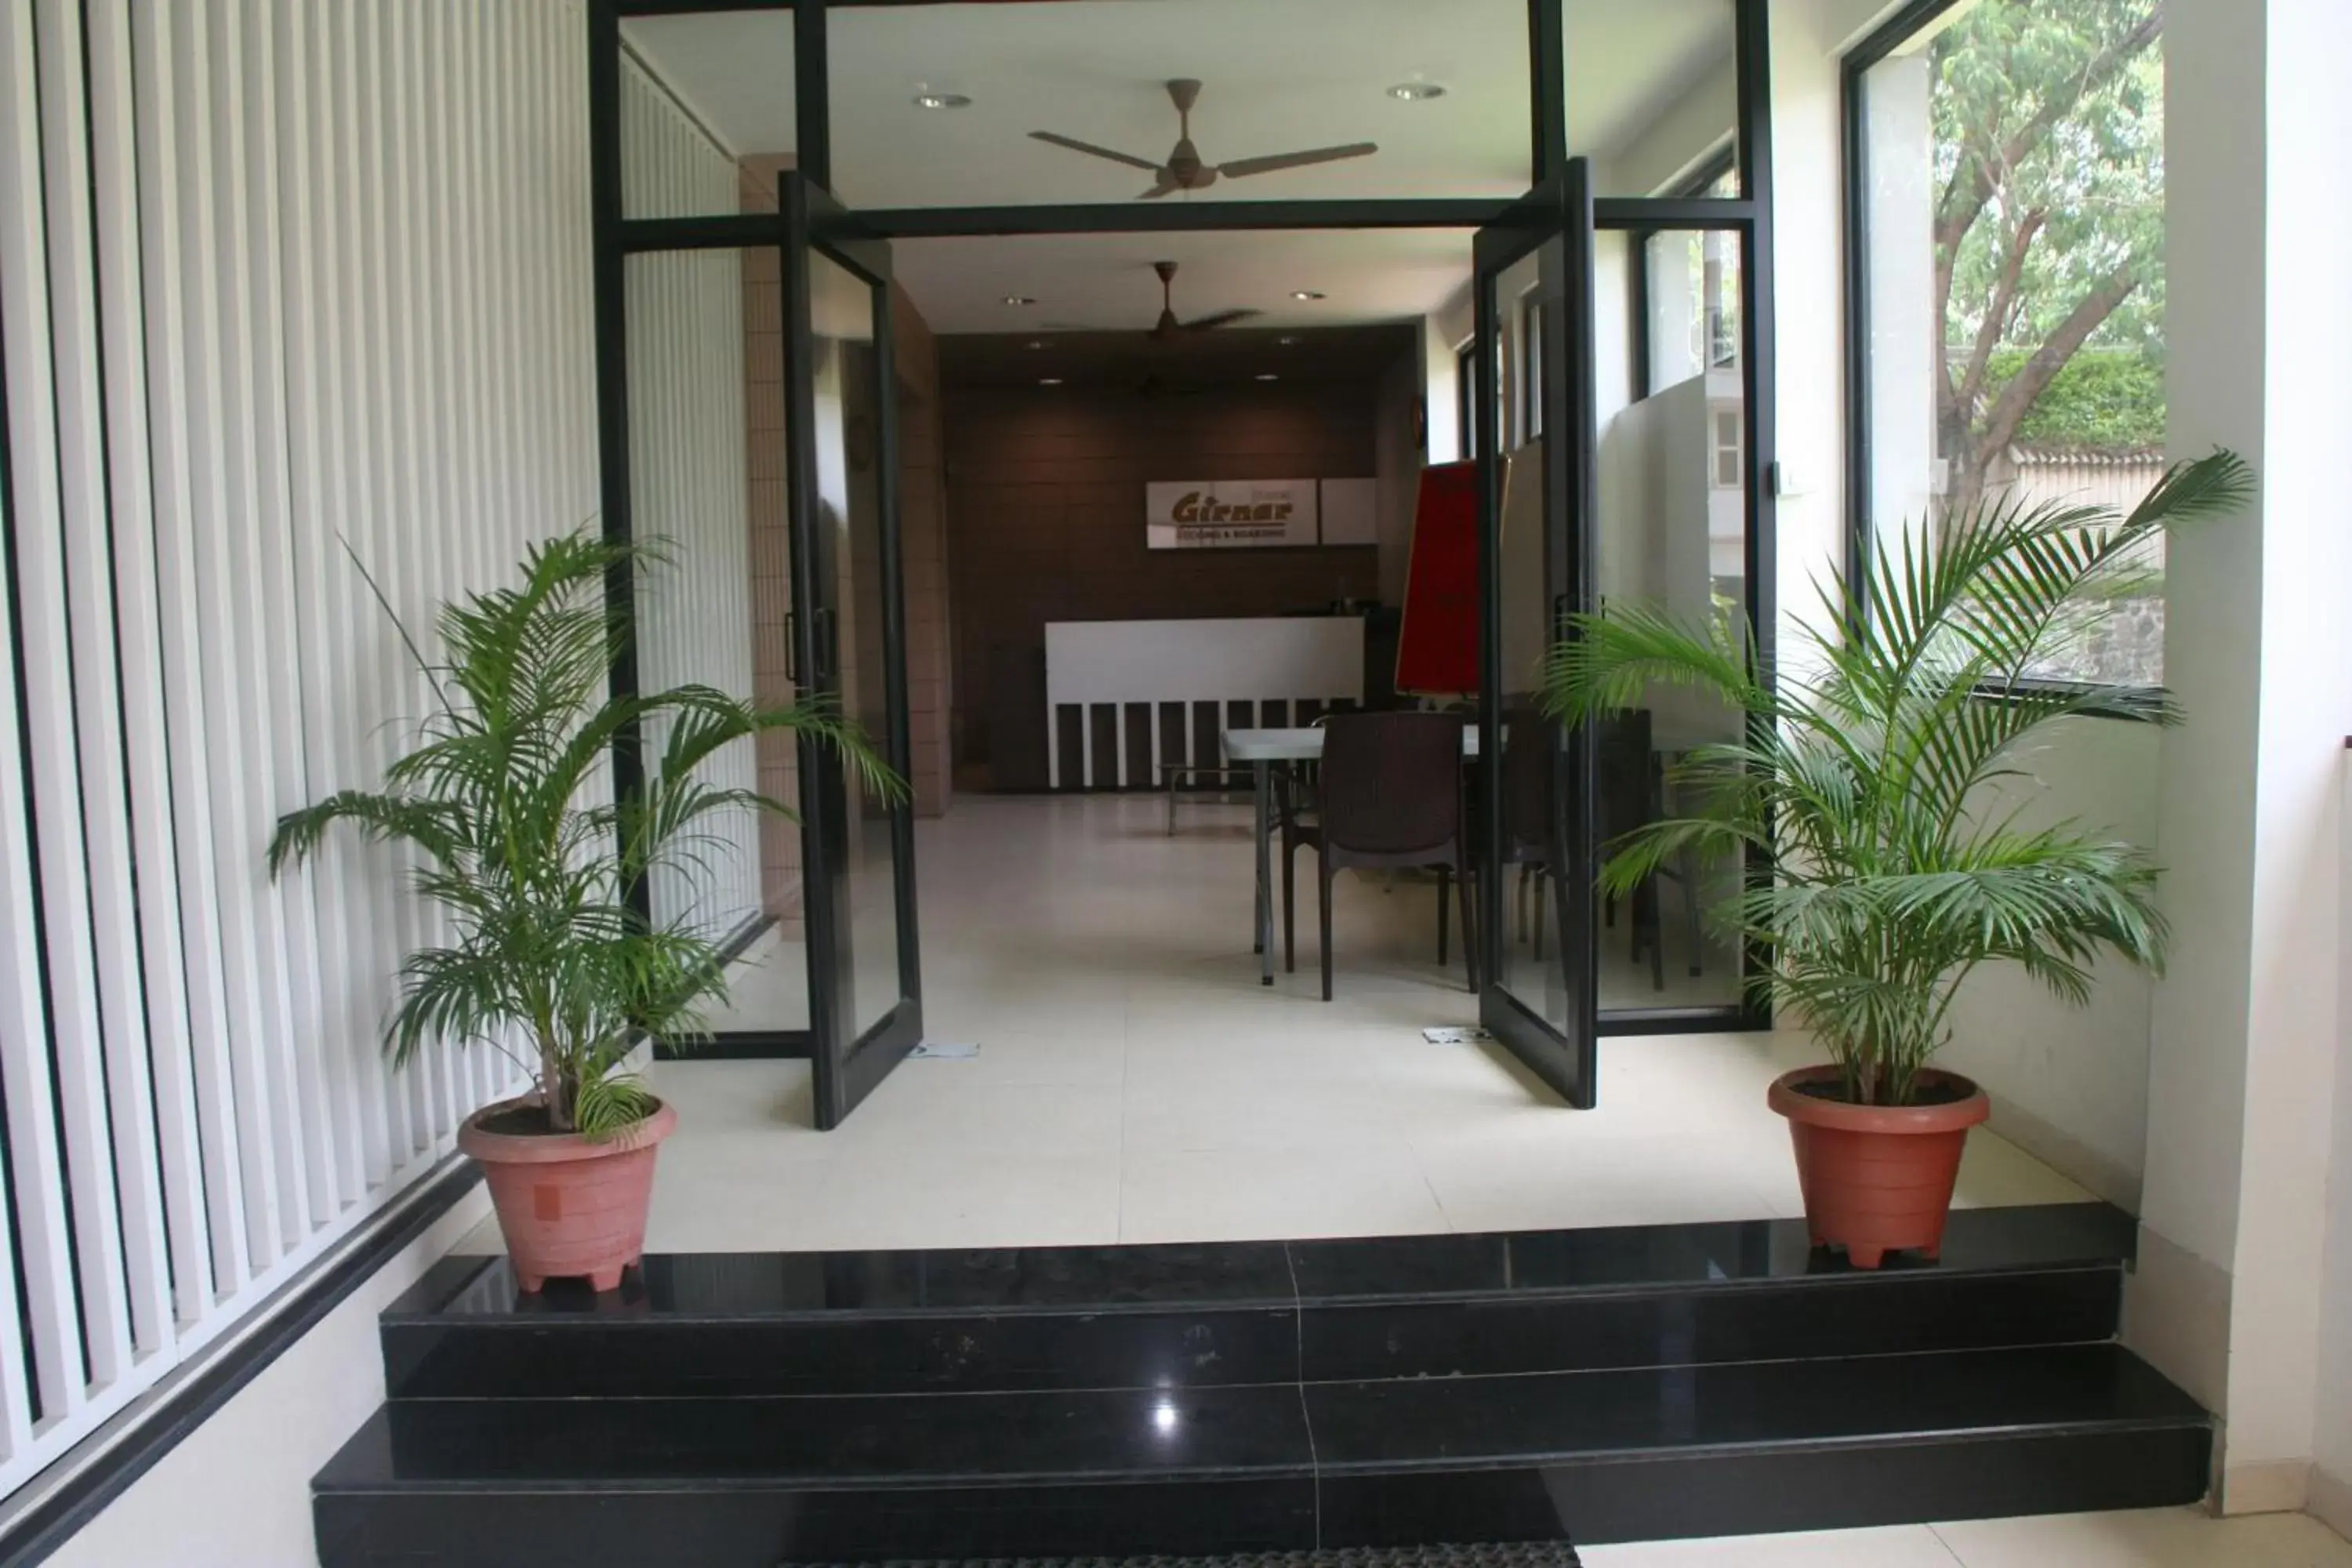 Facade/entrance in Hotel Girnar